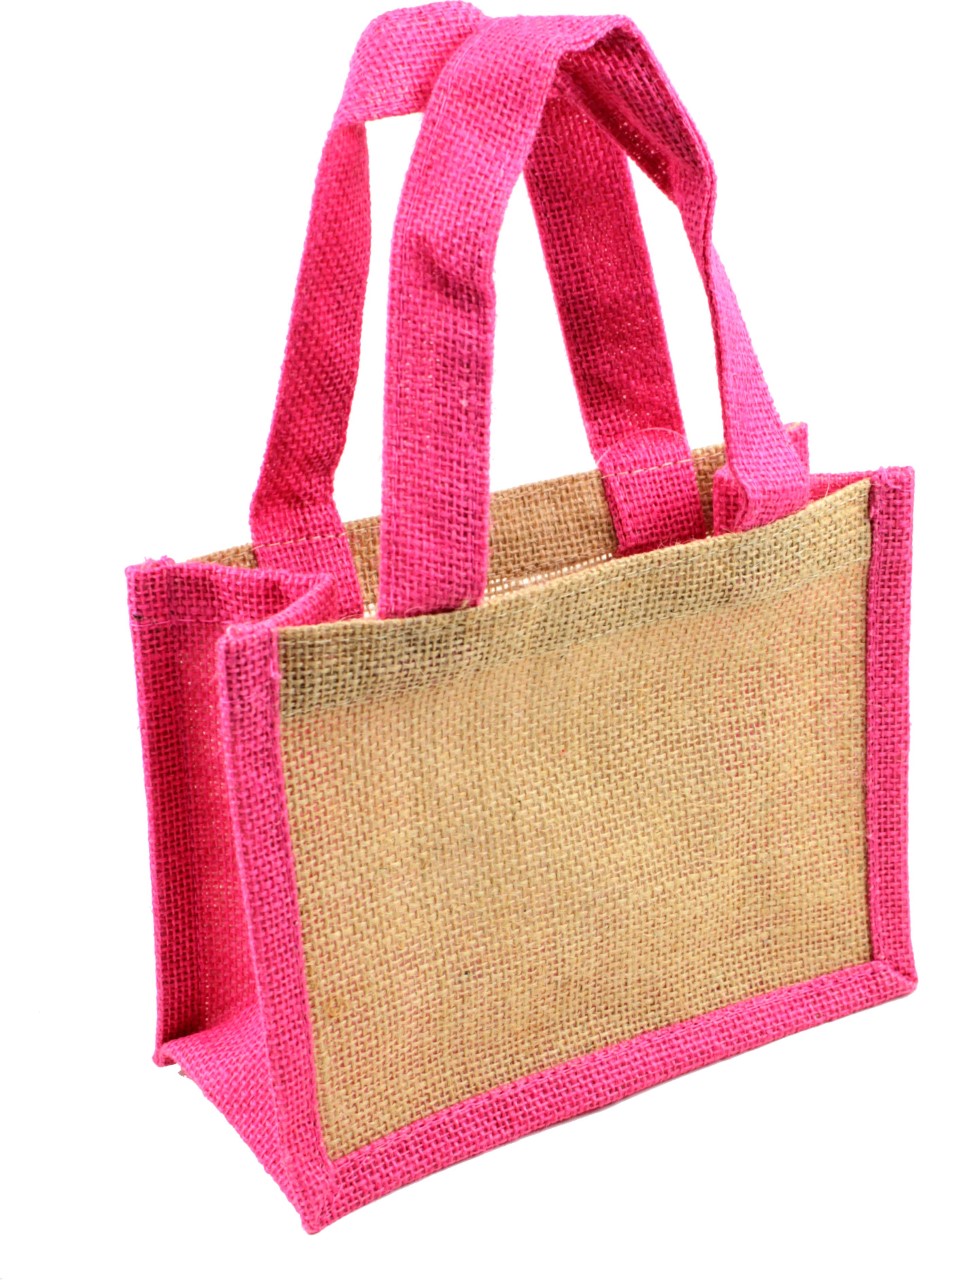 Pink Gusset Jute Tote Bag w/PinkHandles - 8" x 6" x 4"